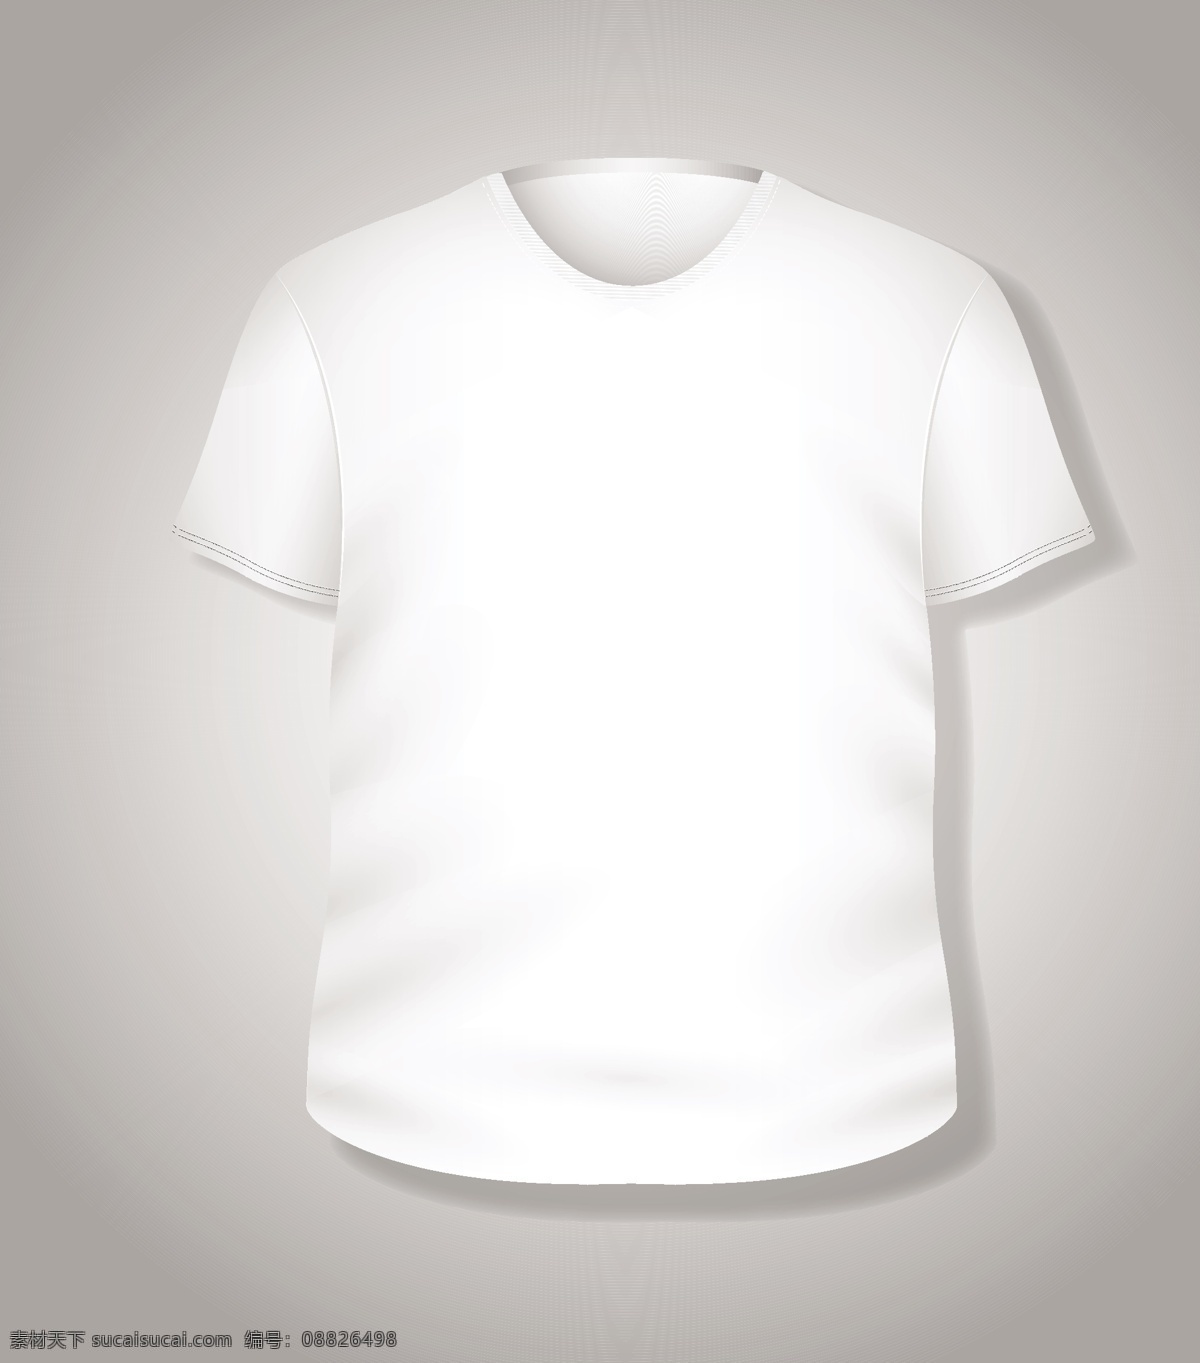 简单 白色 t 恤 矢量 插画 模板